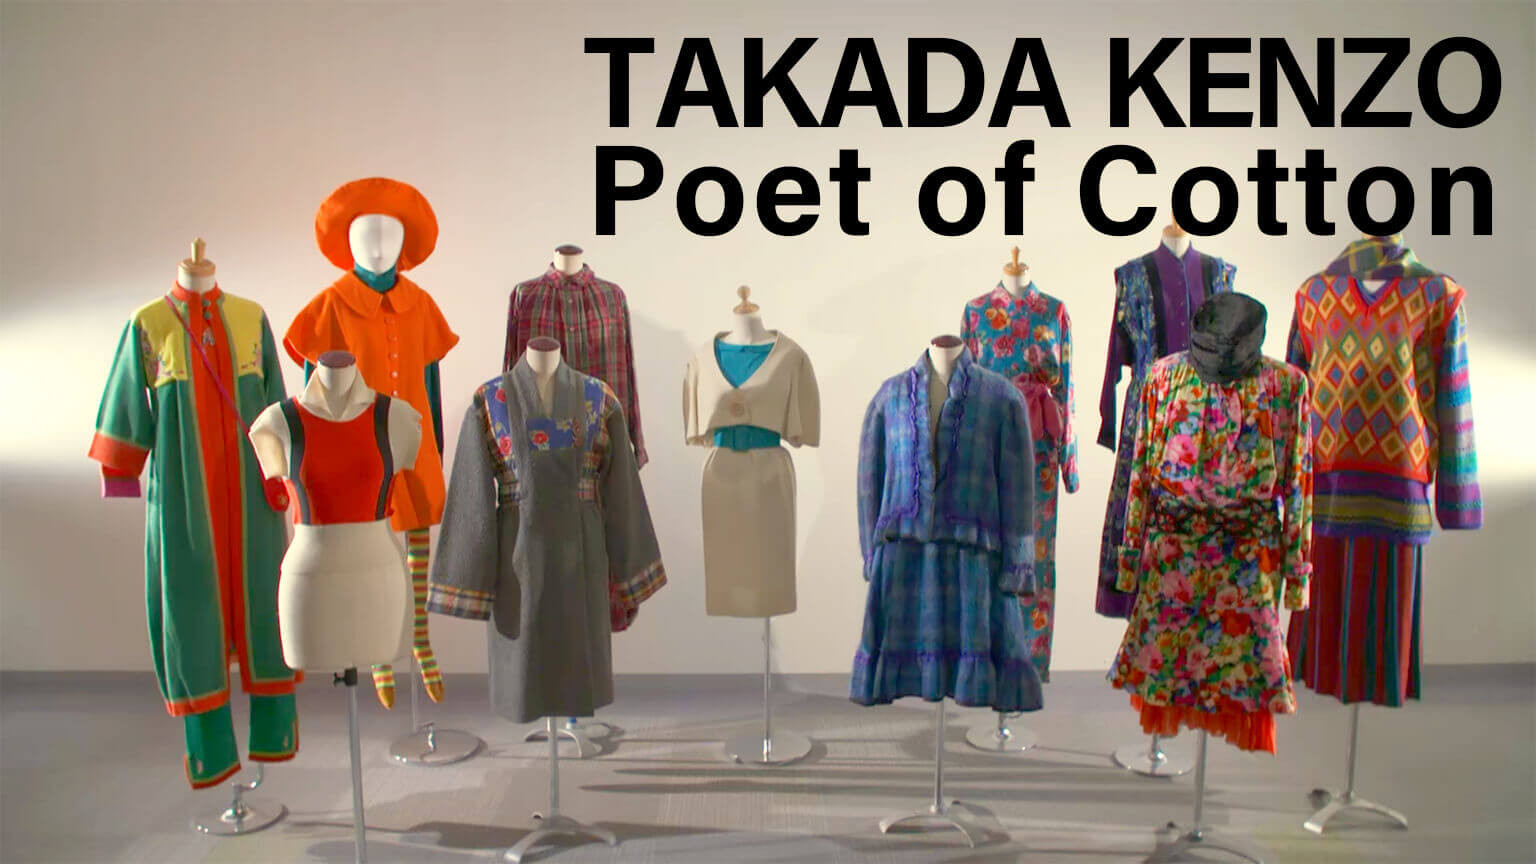 高田贤三 木棉诗人
TAKADA KENZO Poet of Cotton